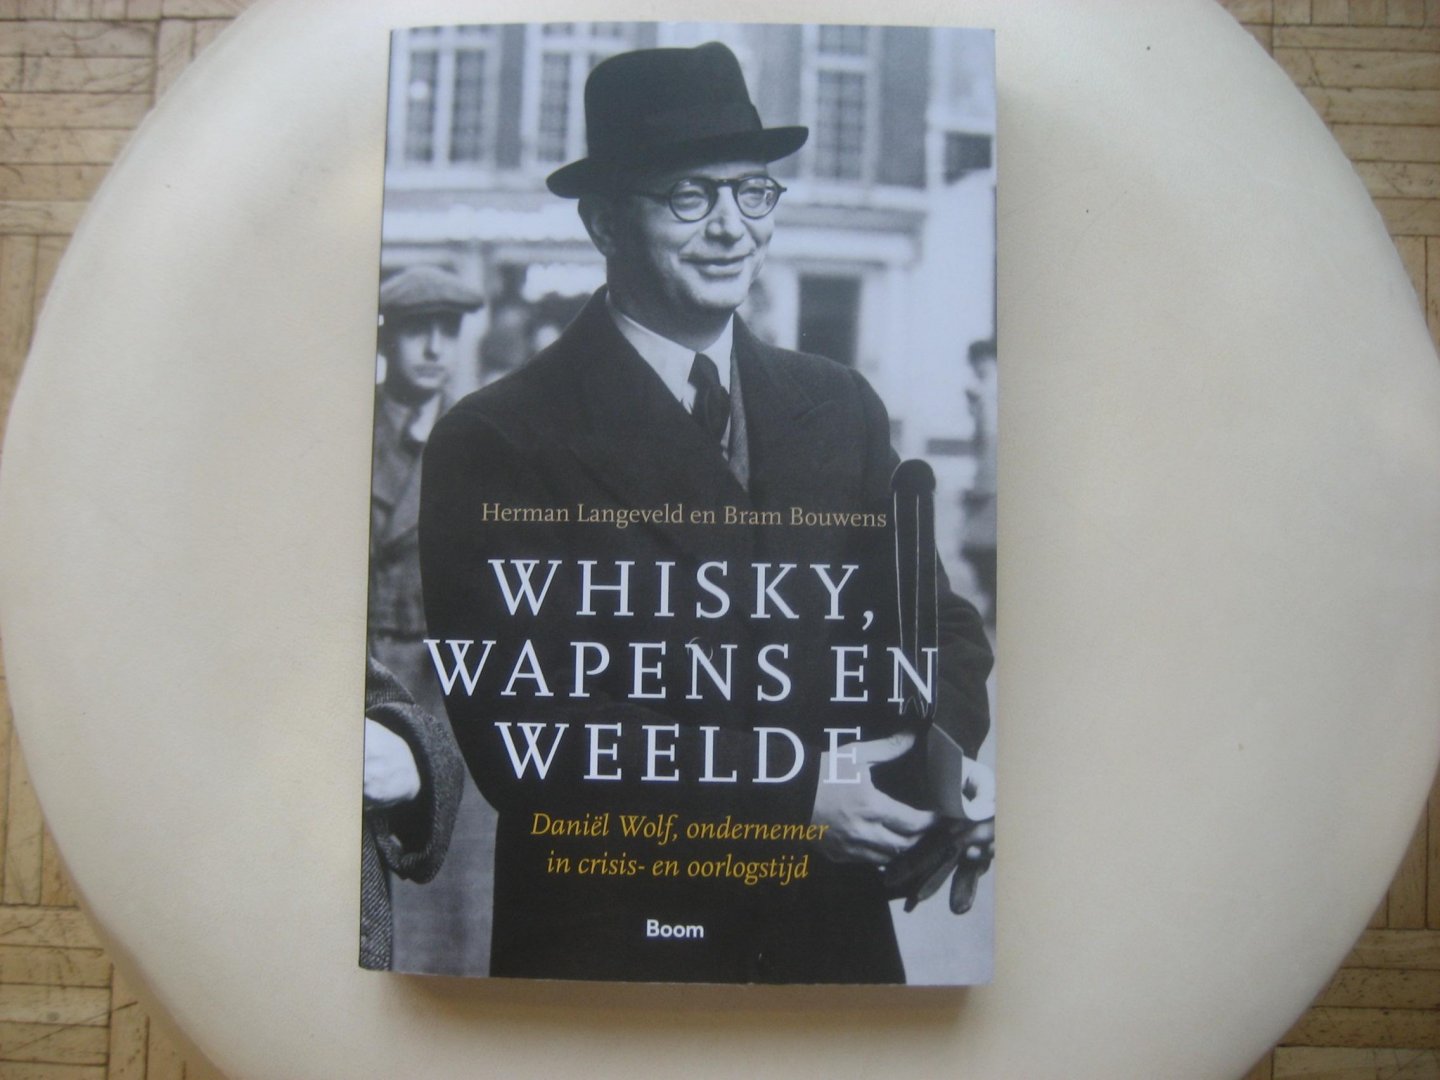 Herman Langeveld en Bram Bouwens - Whisky, Wapens en Weelde / Daniël Wolf, ondernemer in crisis-en oorlogstijd